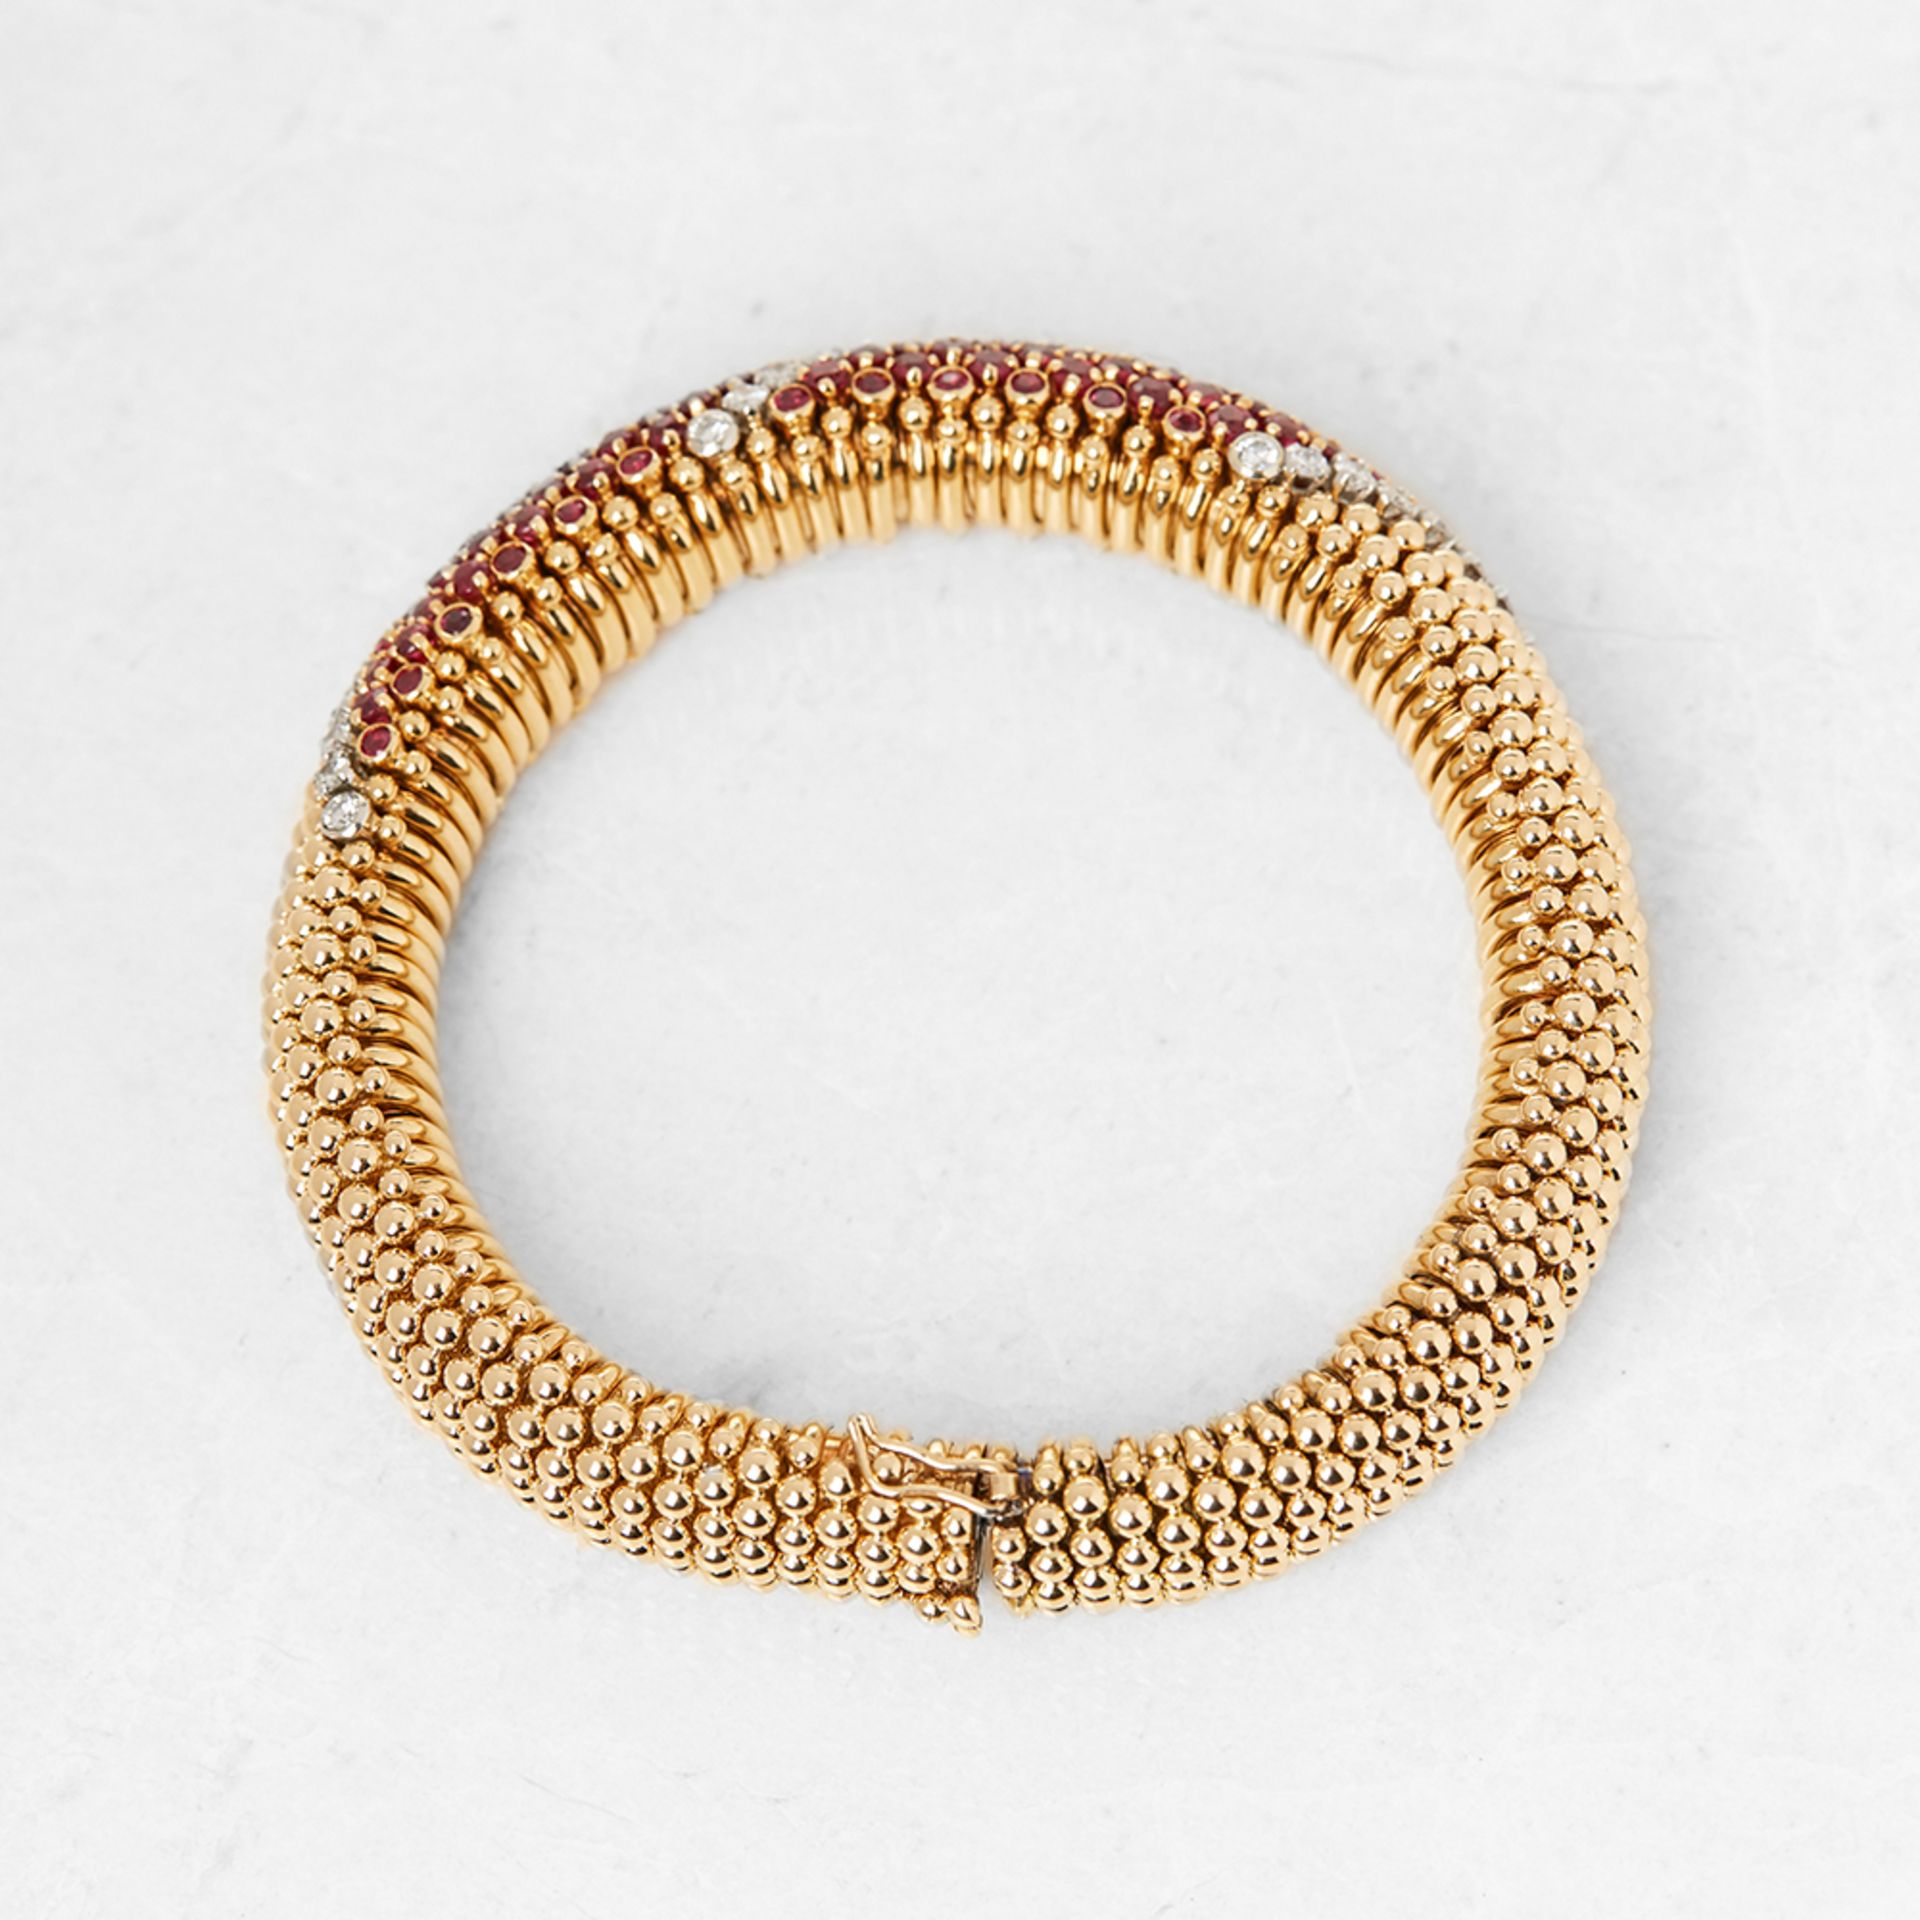 Van Cleef & Arpels 18k Yellow Gold Ruby & Diamond Bracelet - Image 6 of 7